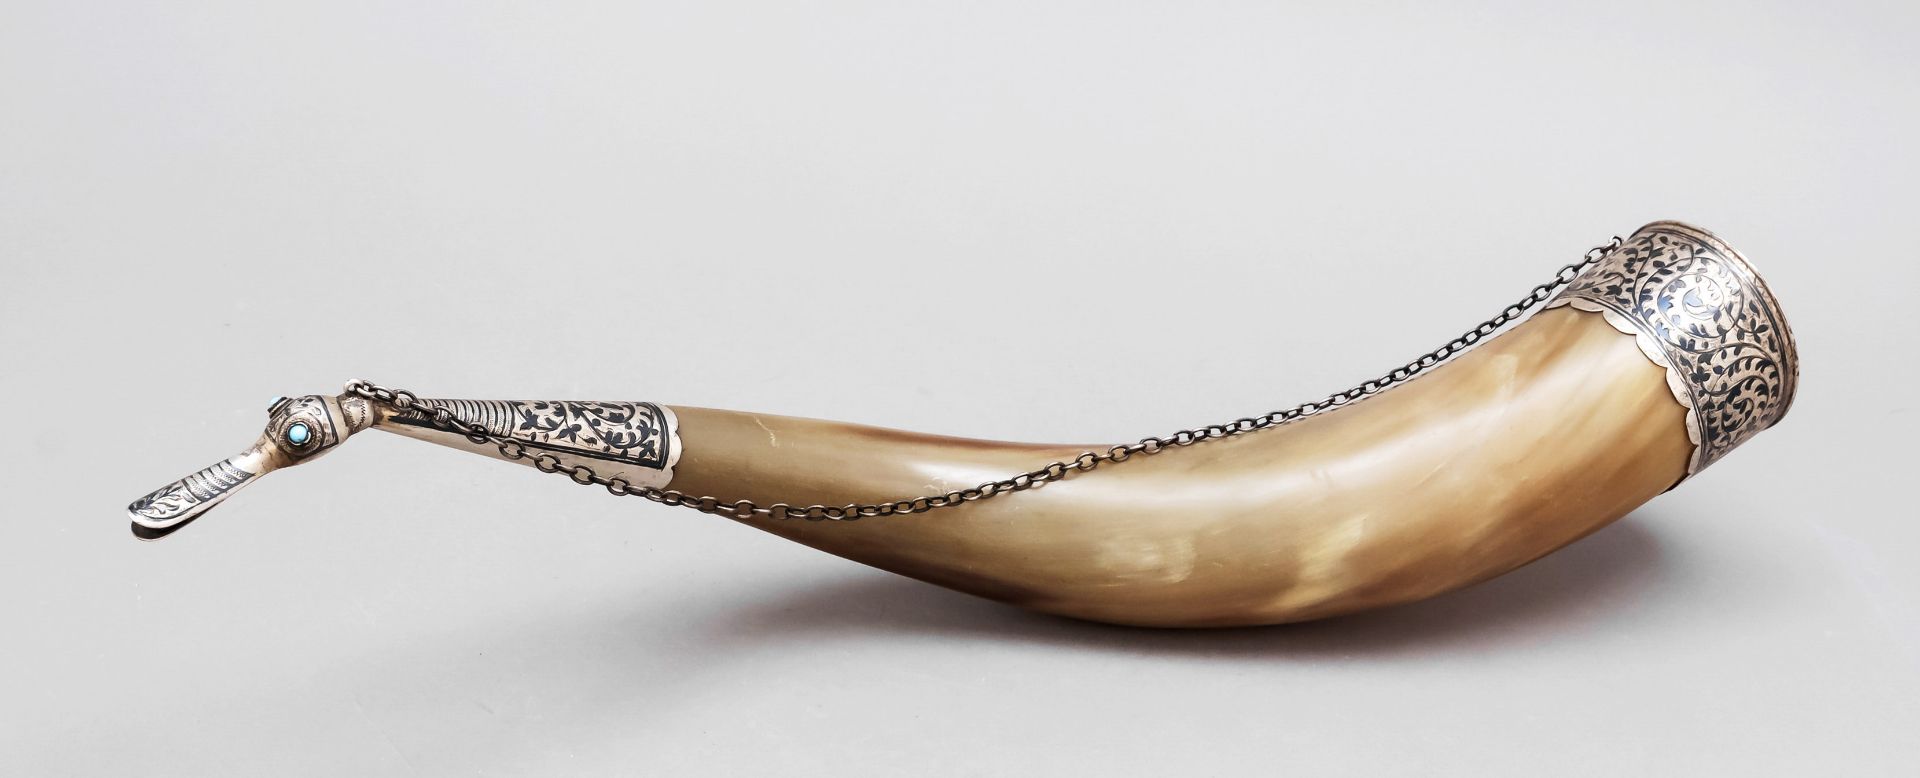 Horn mit Silbermontage, Anf. 2